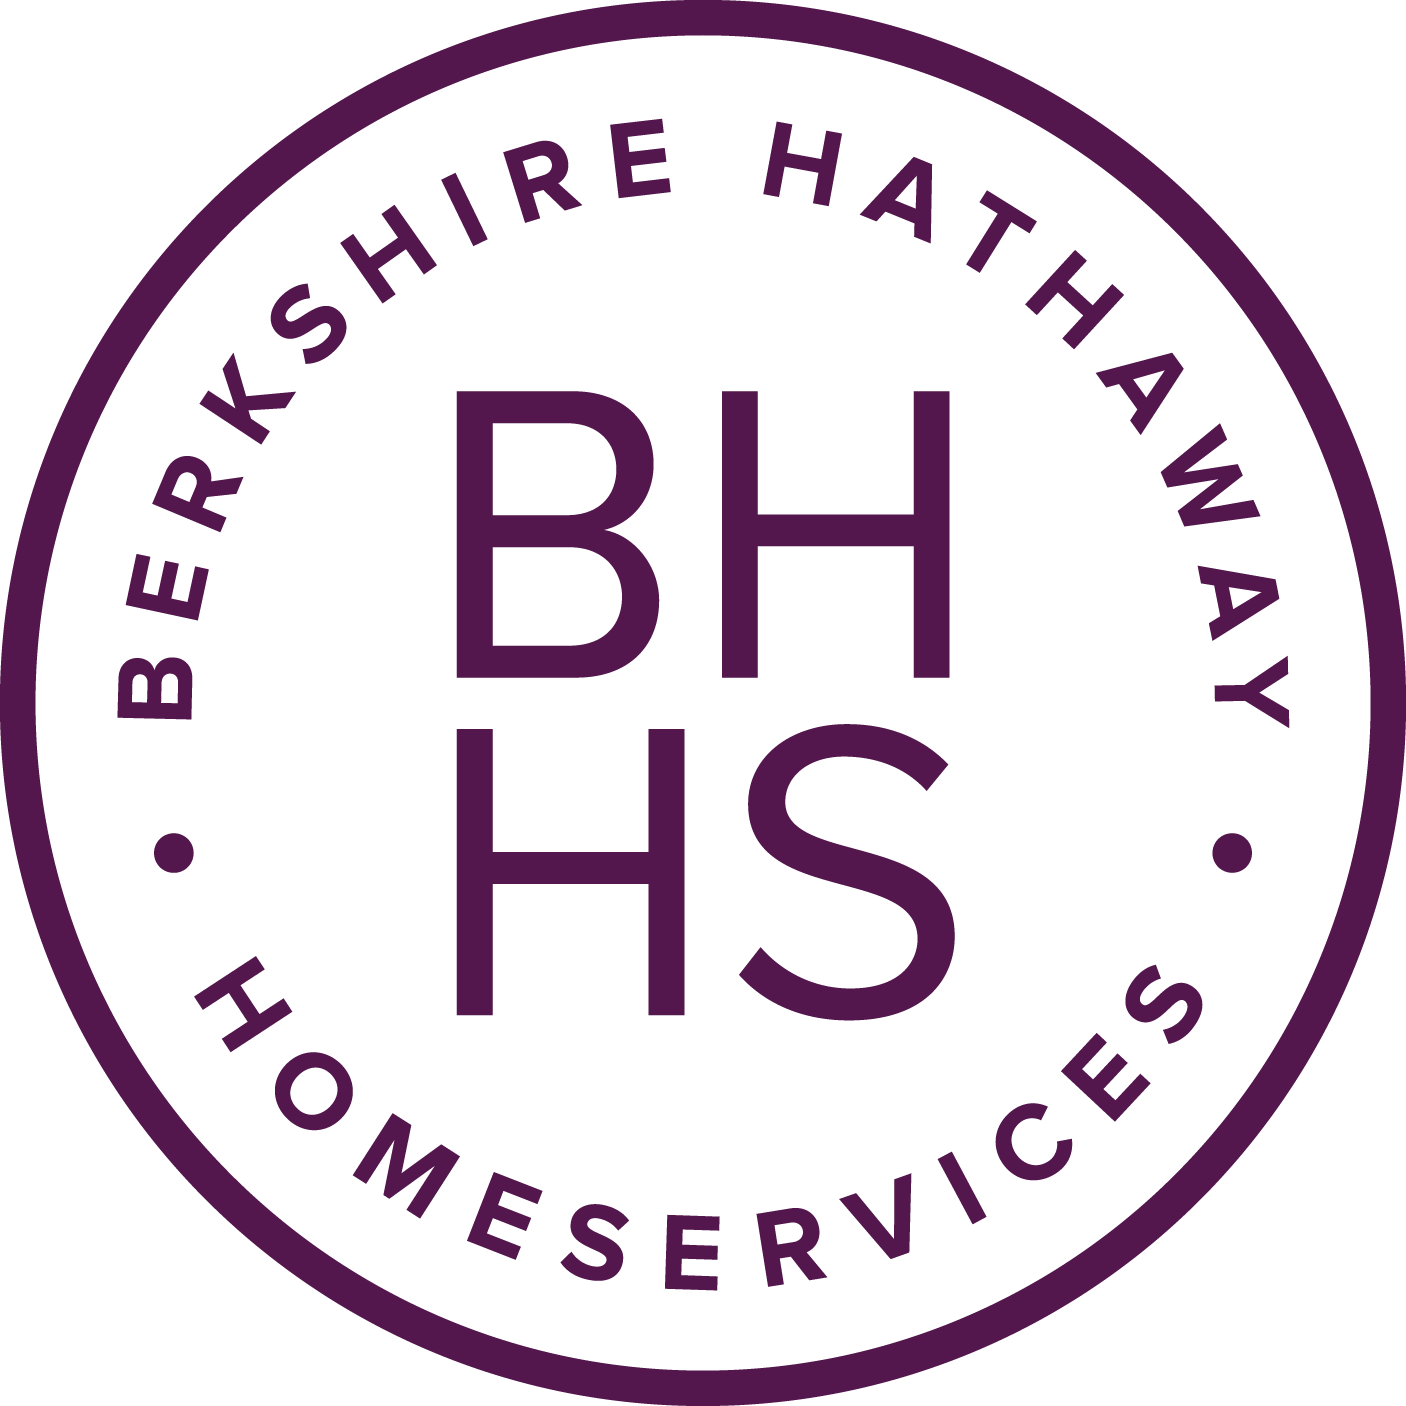 Servicios para el hogar Berkshire Hathaway logo transparente PNG